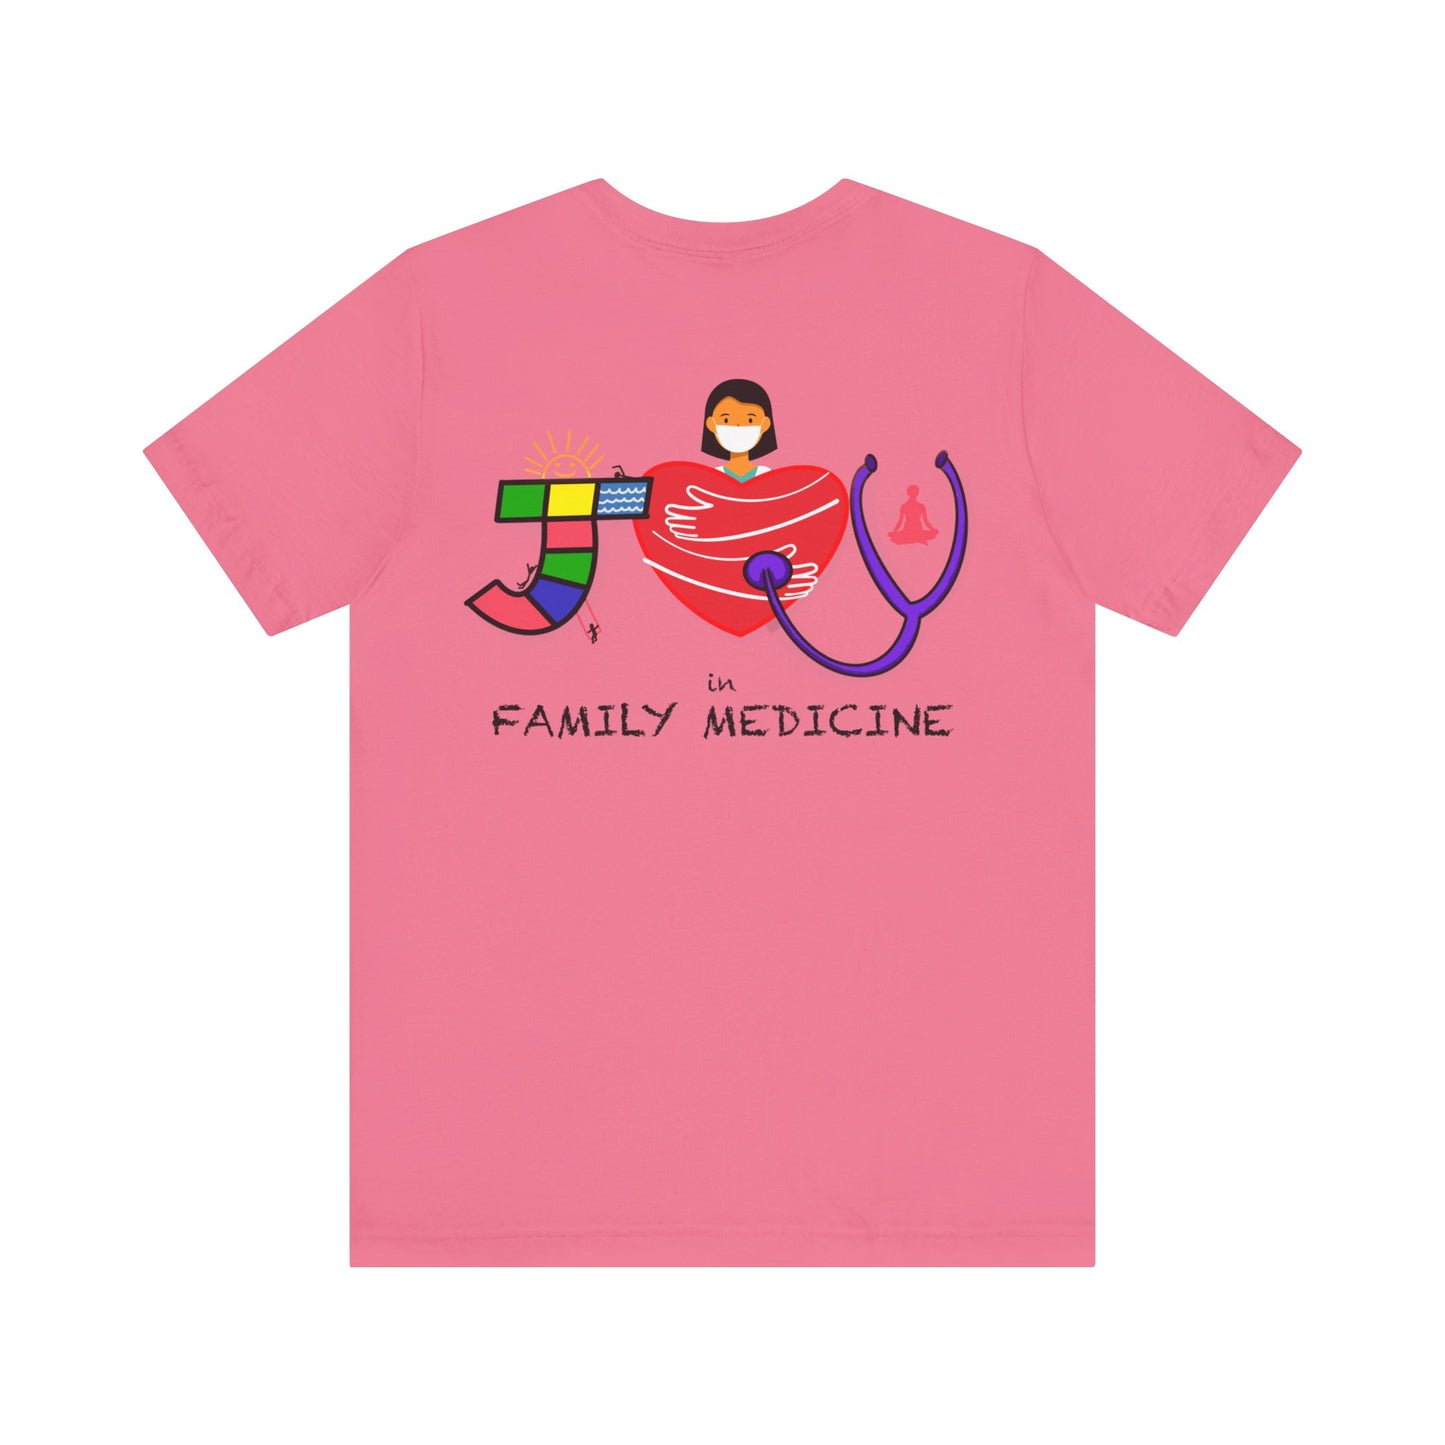 Joy in Family Medicine